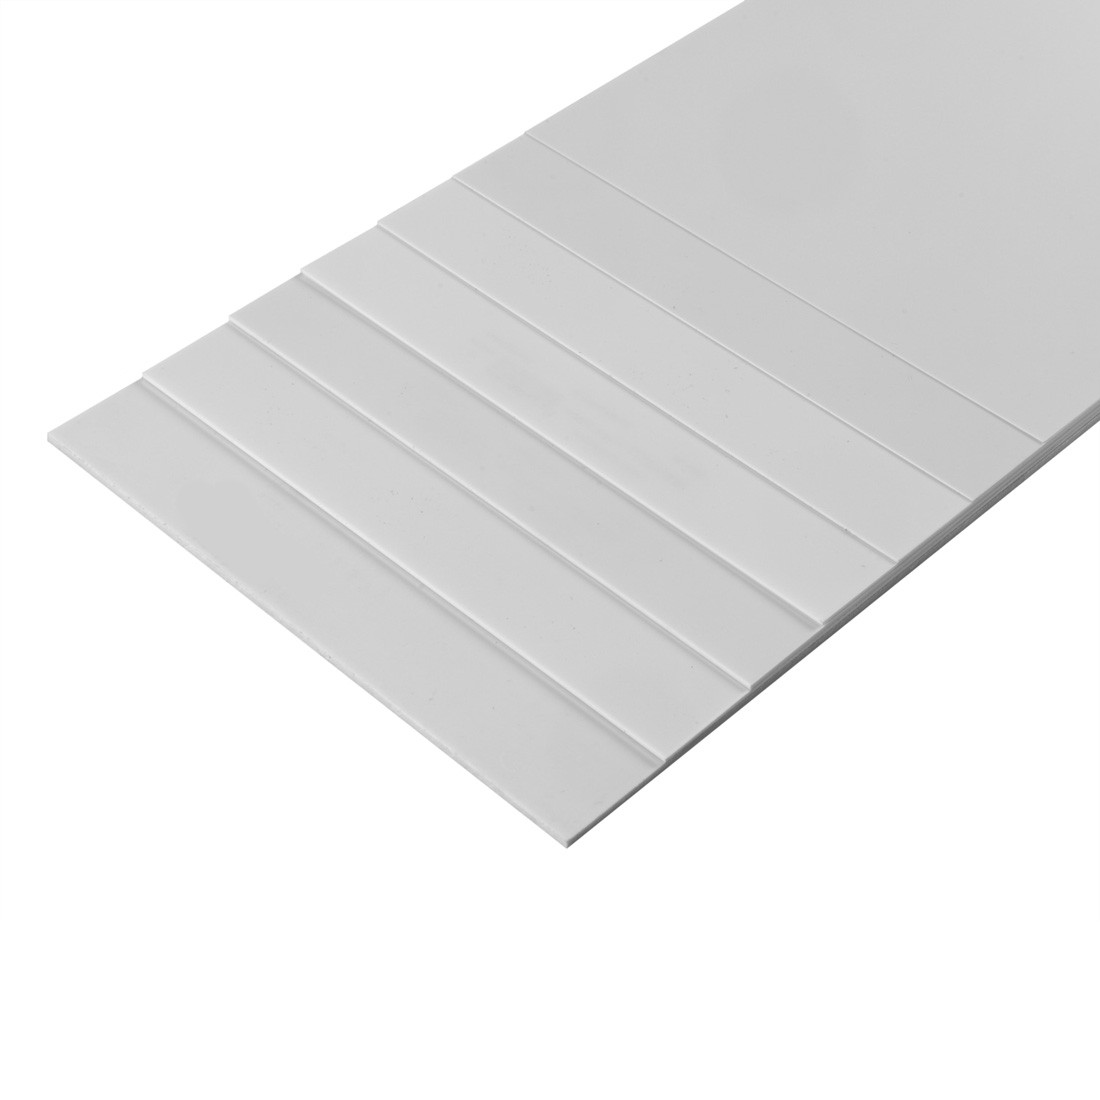 Styrene white mm.194x320 - mm.1,5